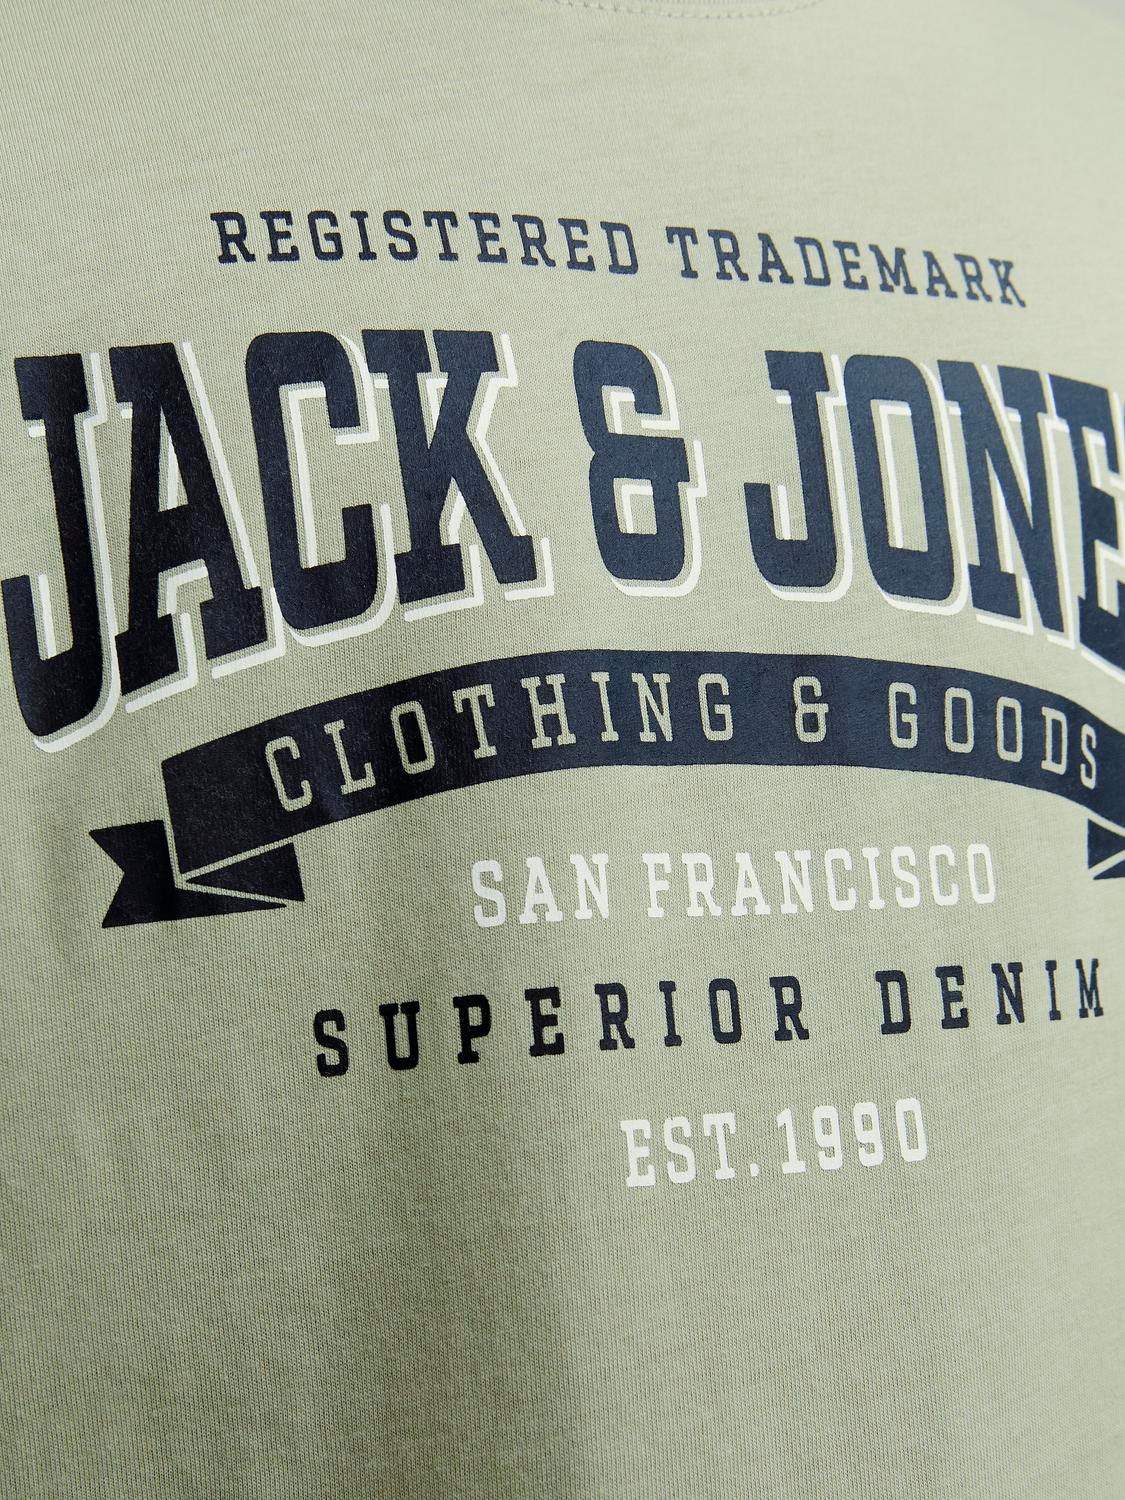 Jack & Jones 2-pack Plain T-shirt For boys -Desert Sage - 12256885